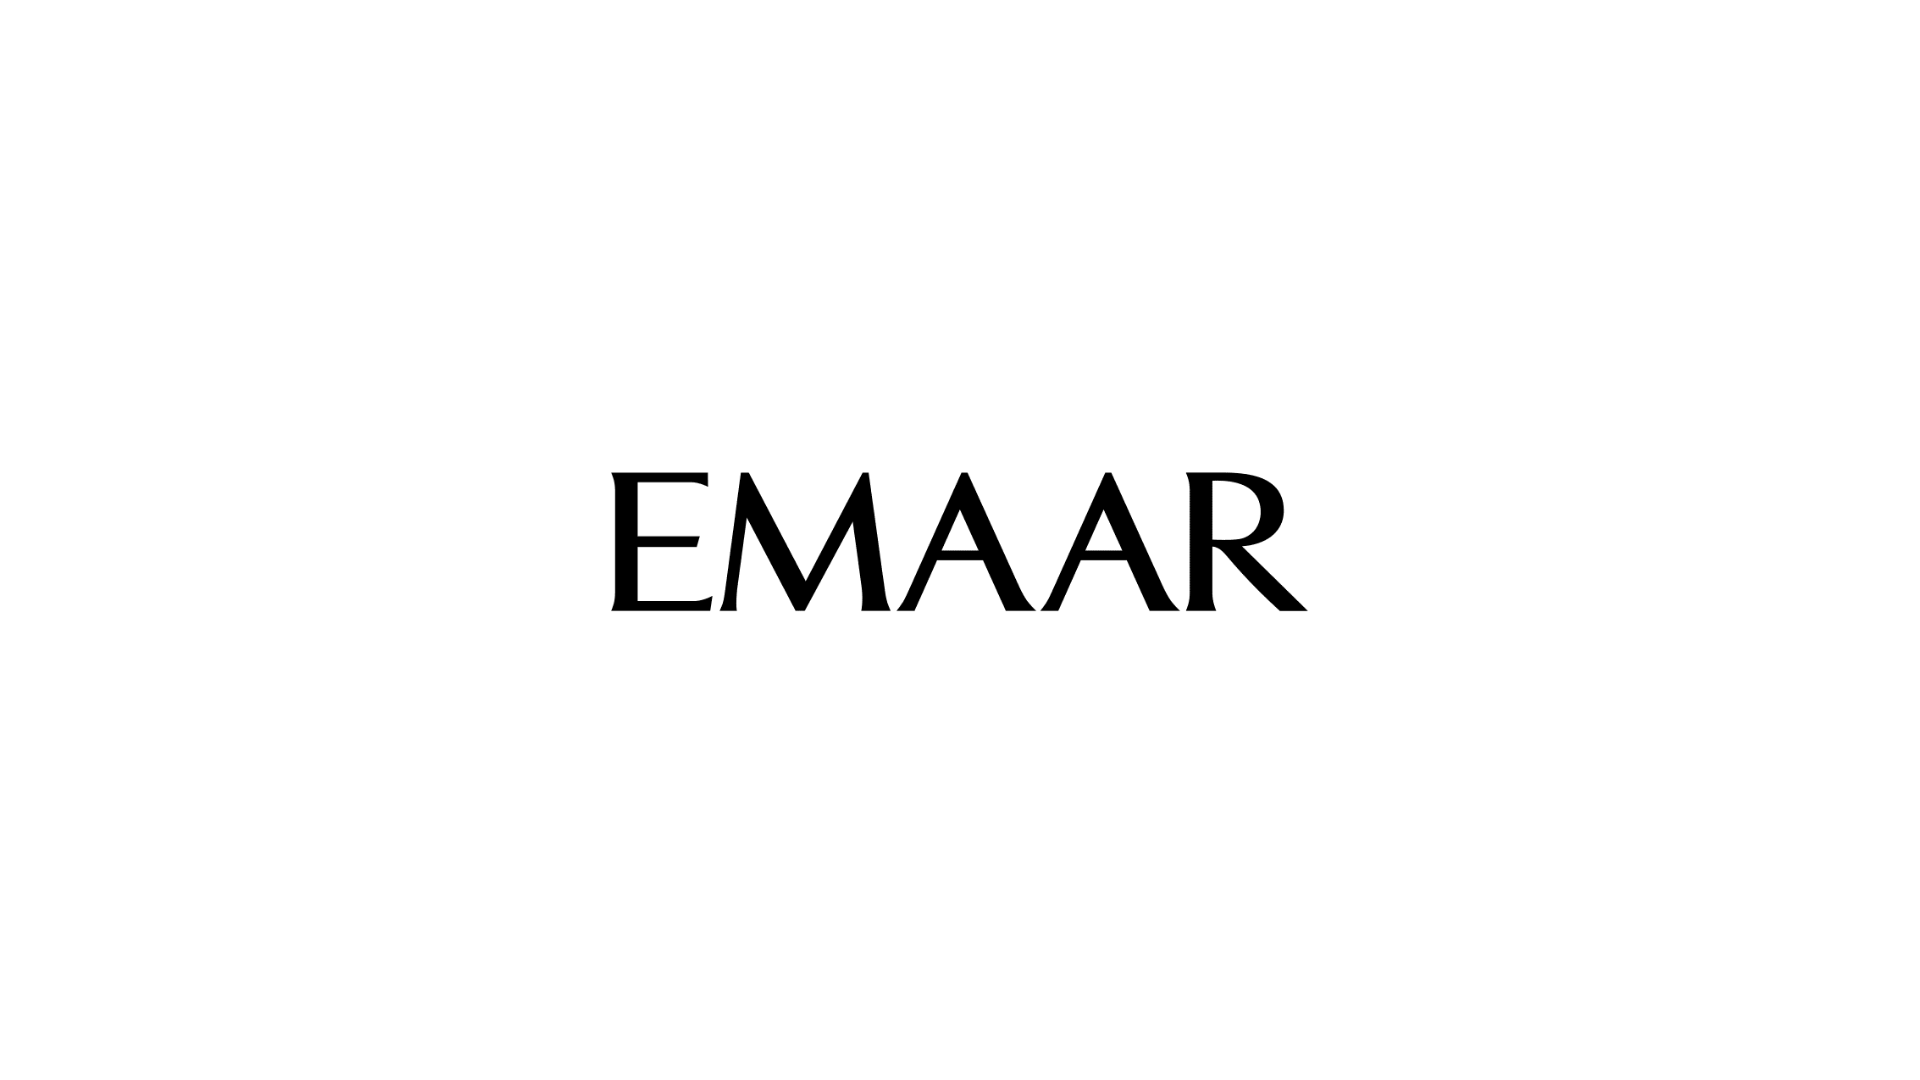 Emaar - property finder in dubai